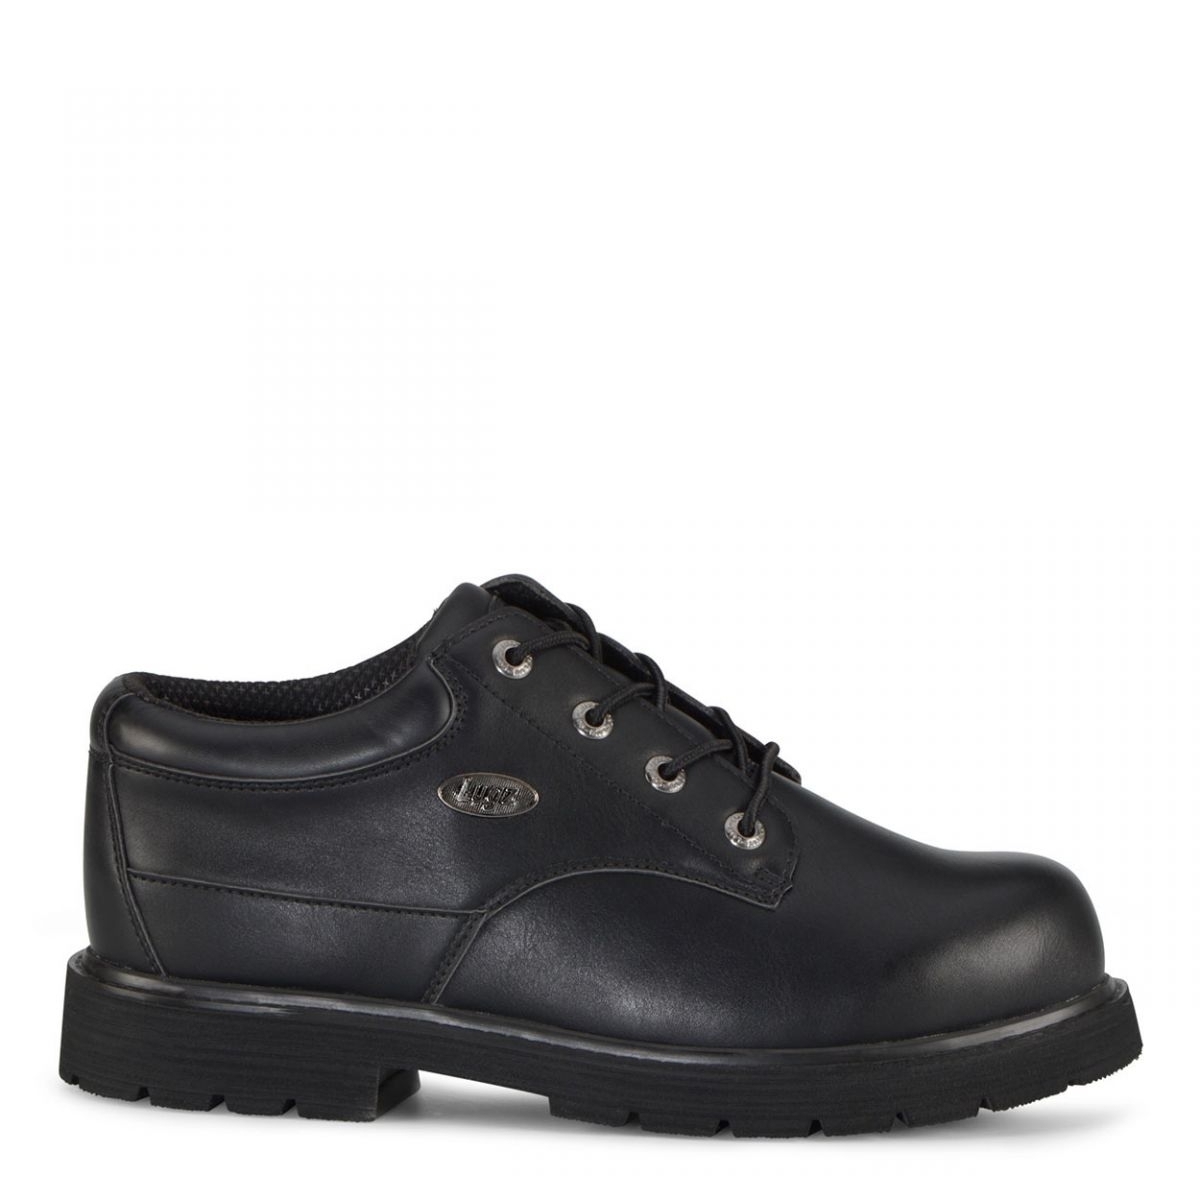 Lugz Men's Drifter Lo Lx Oxford Boot Black - MDRLXLV-001 BLACK - BLACK, 13